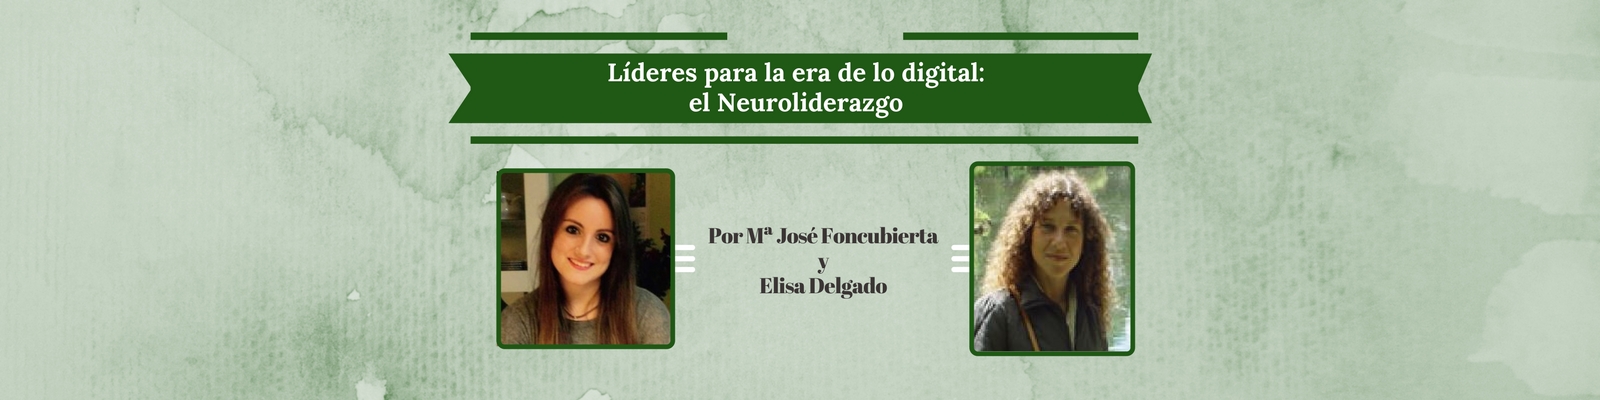 Líderes para la era de lo digital: el Neuroliderazgo. Por María José Foncubierta y Elisa Delgado